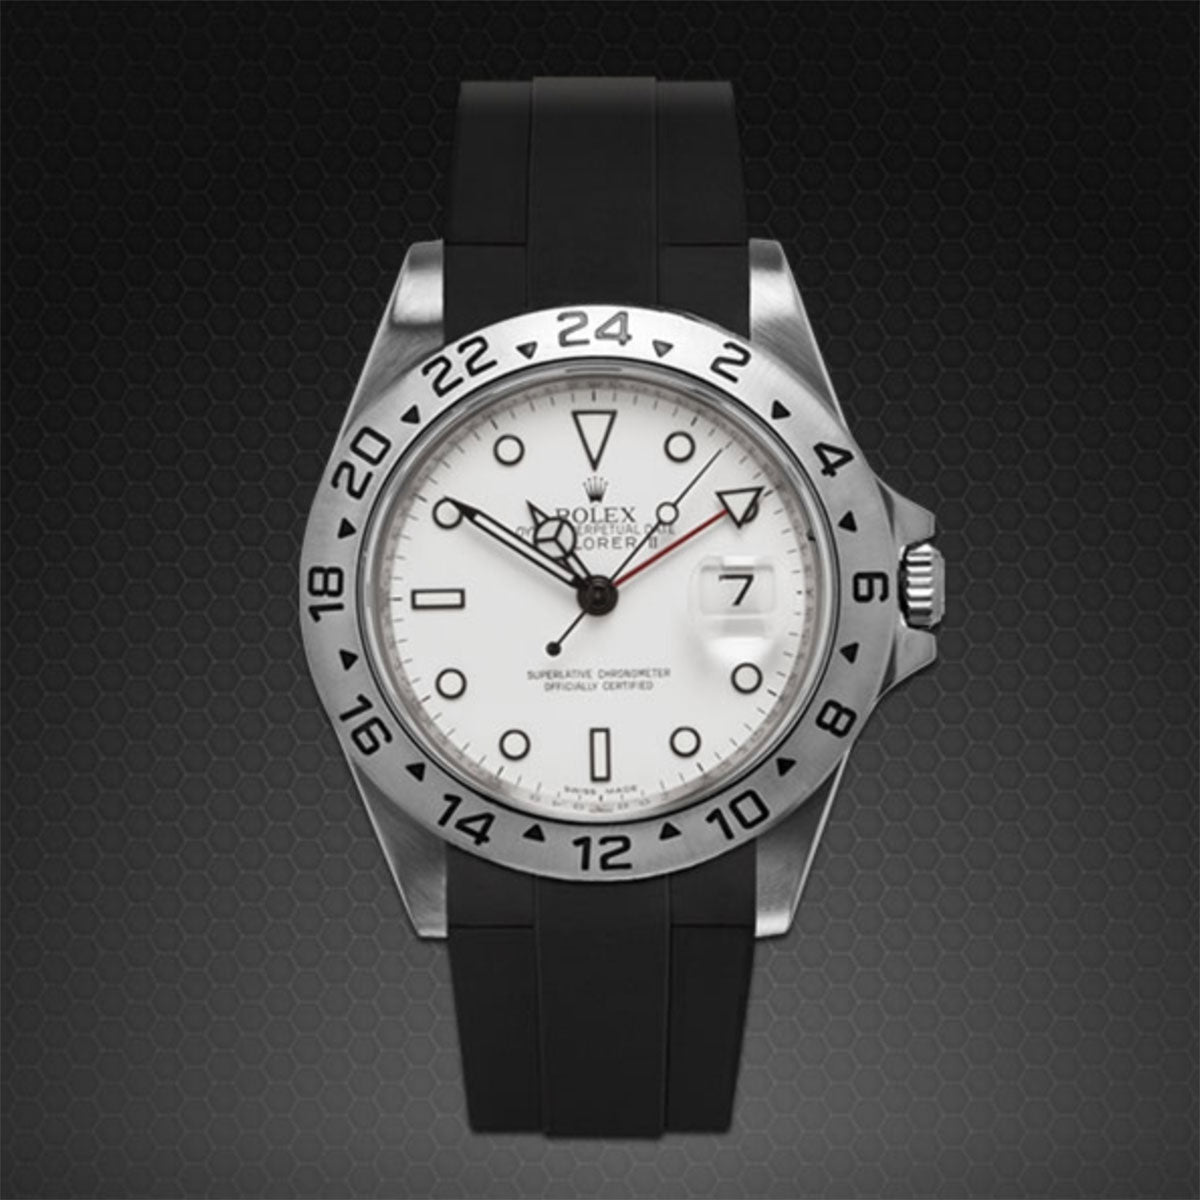 Rolex - Rubber B - Bracelet caoutchouc pour Explorer II 40mm - Série boucle ardillon - watch band leather strap - ABP Concept -